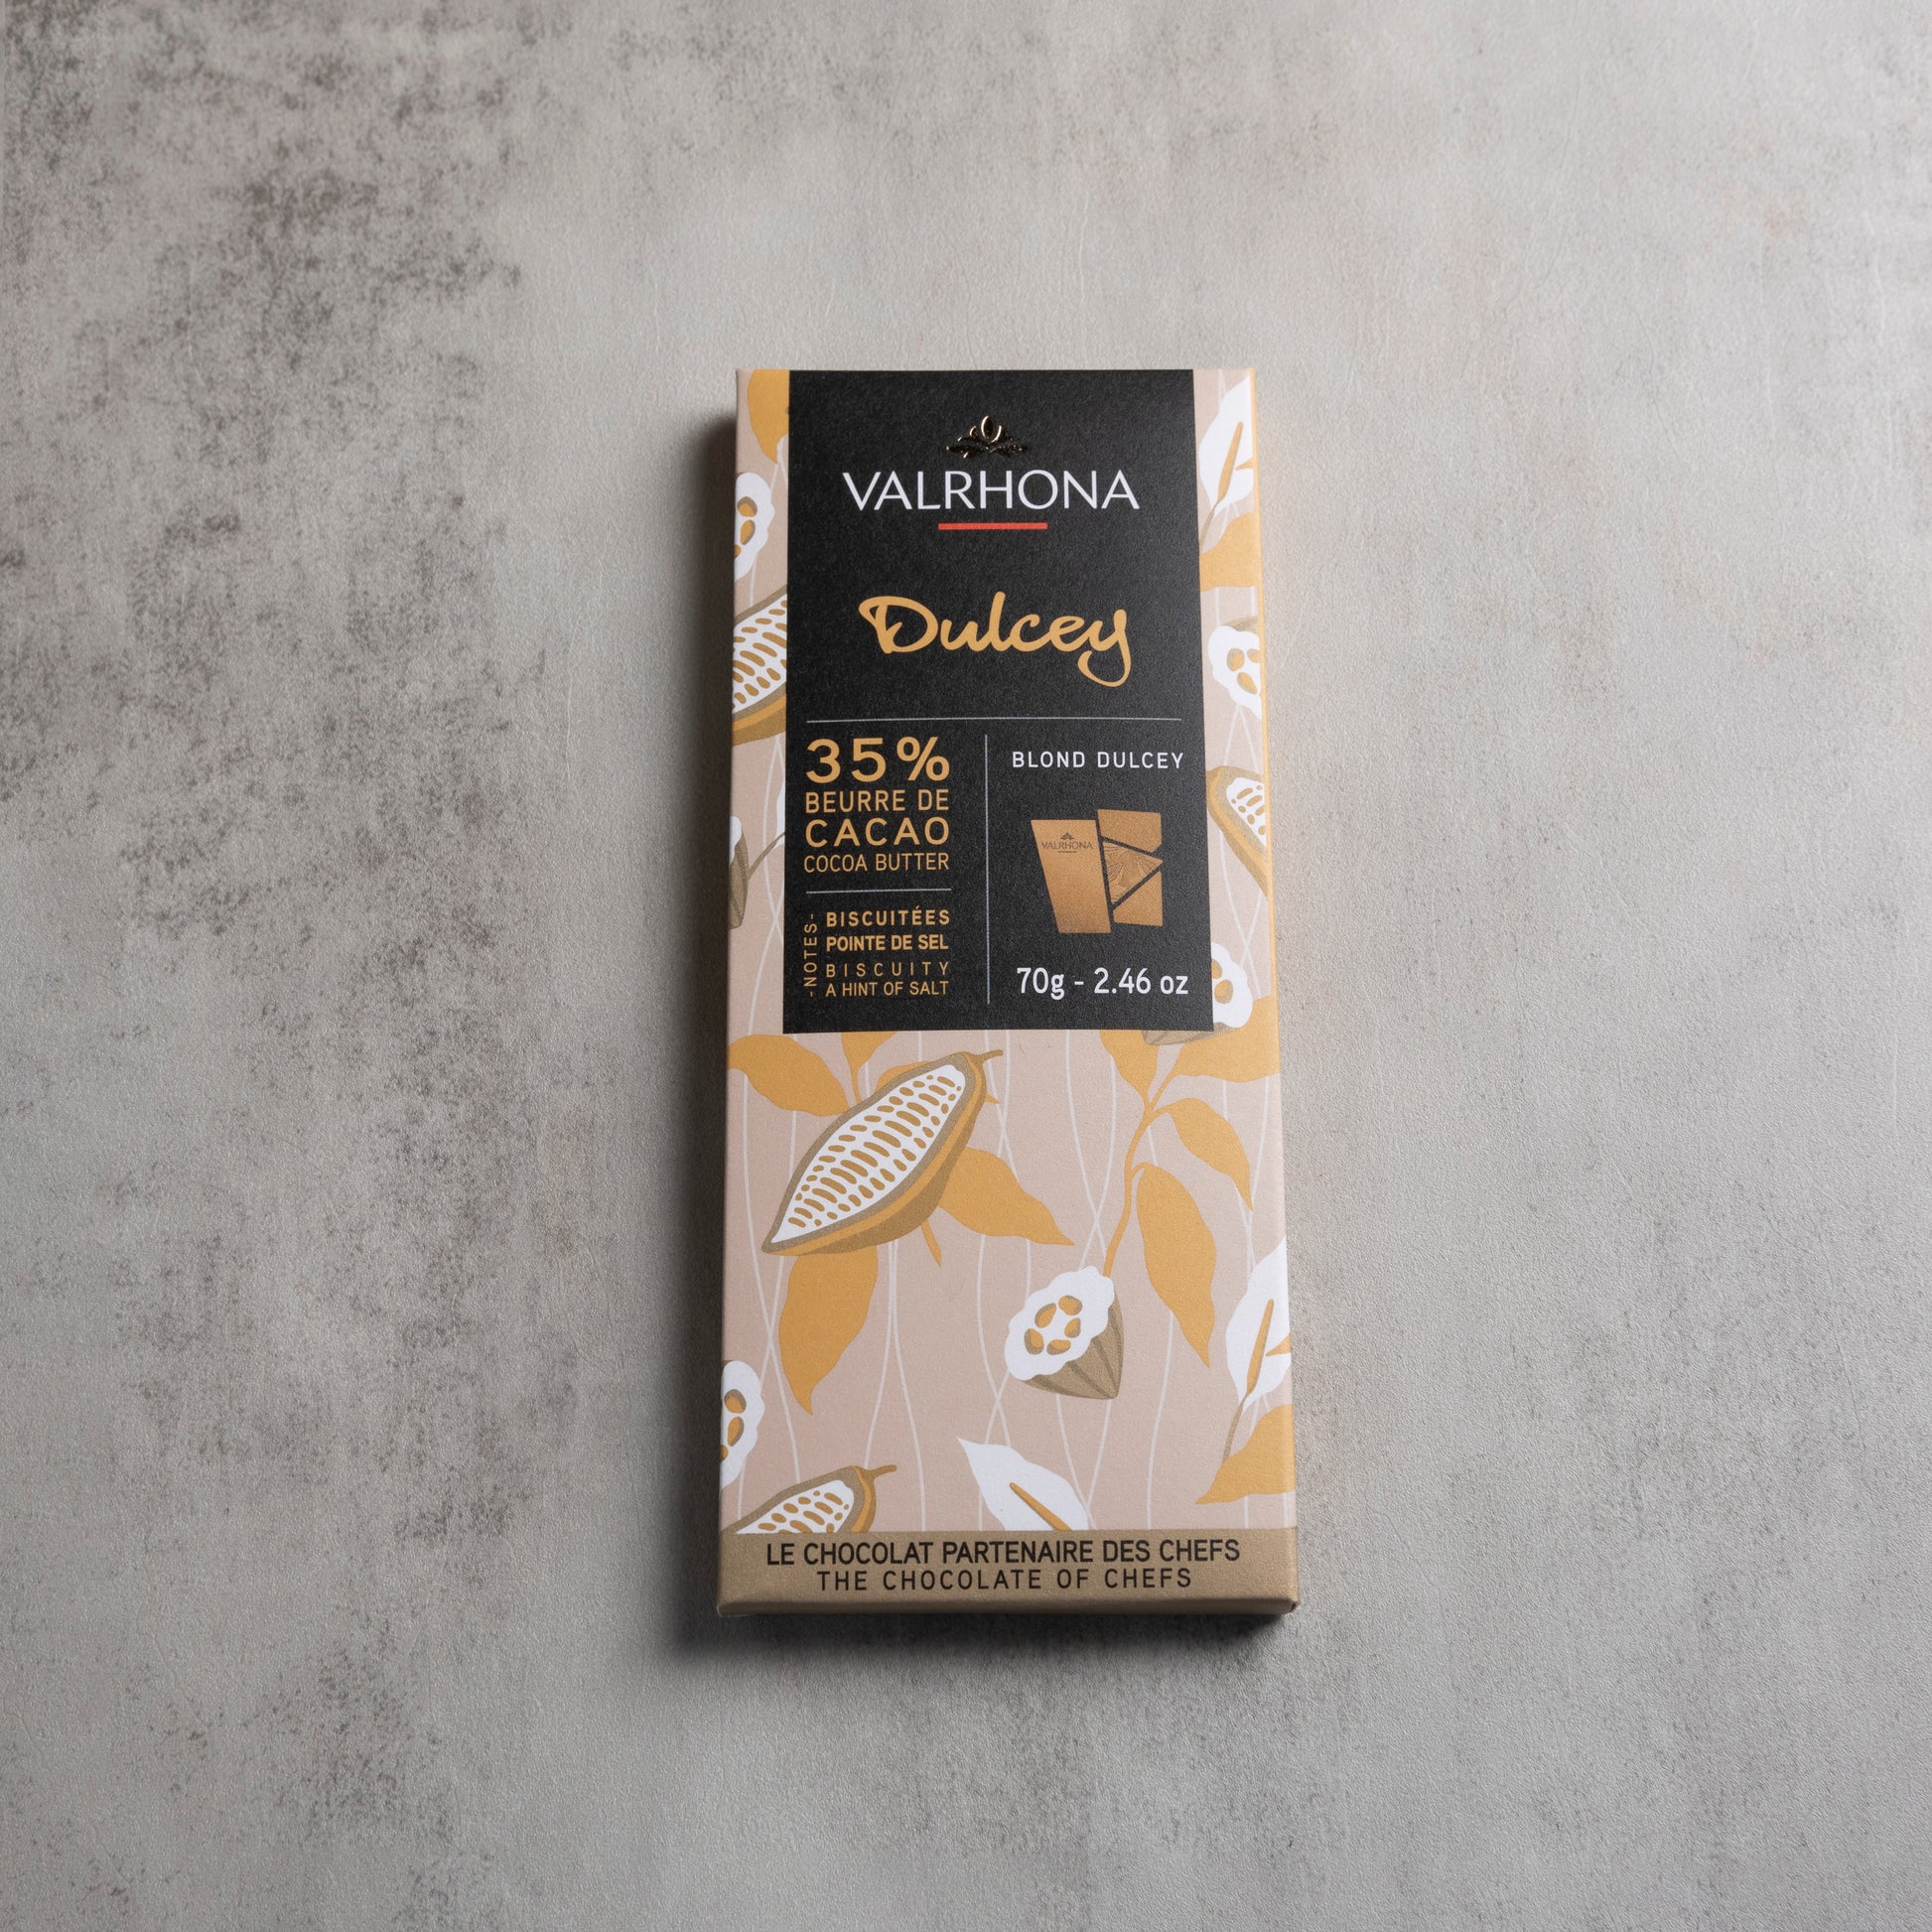 Blond® Dulcey 35%  Valrhona Chocolate